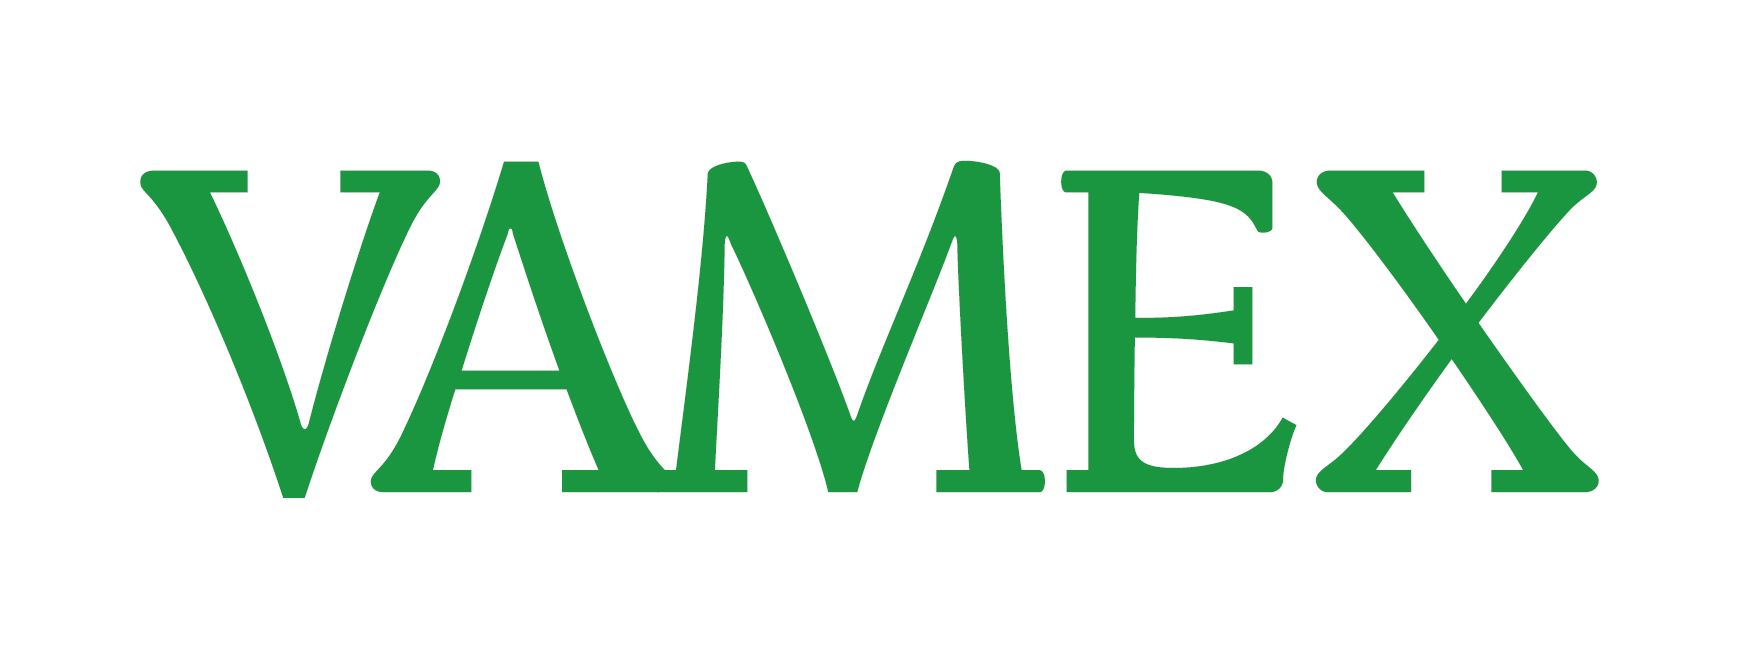 Vamex_logo_green.JPG